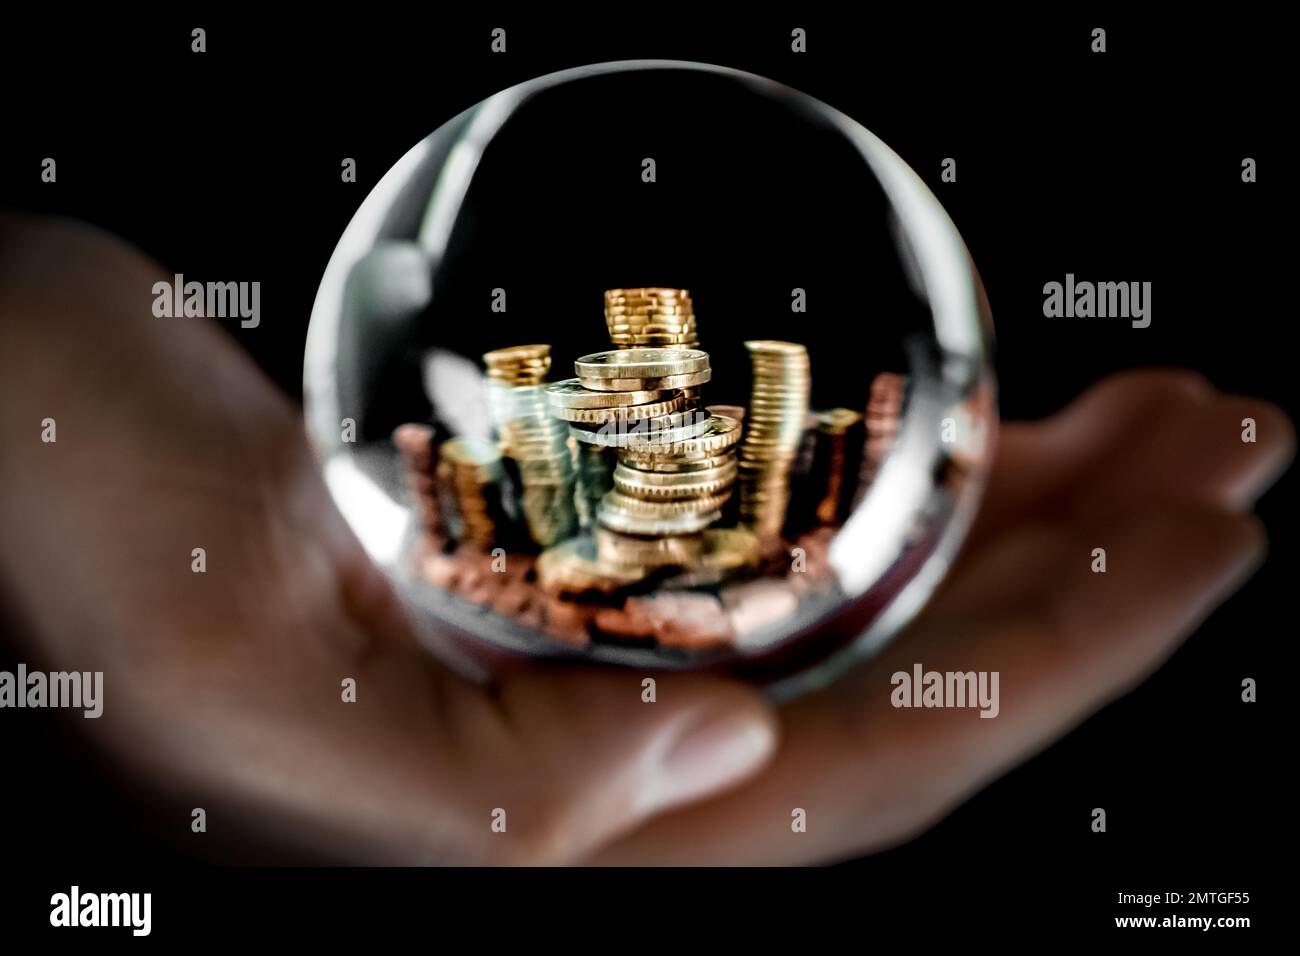 Image symbolique de plusieurs pièces de monnaie européennes métalliques empilées en piles avec un espace de copie sur le dessus, vue à travers une sphère de verre transparente. Banque D'Images